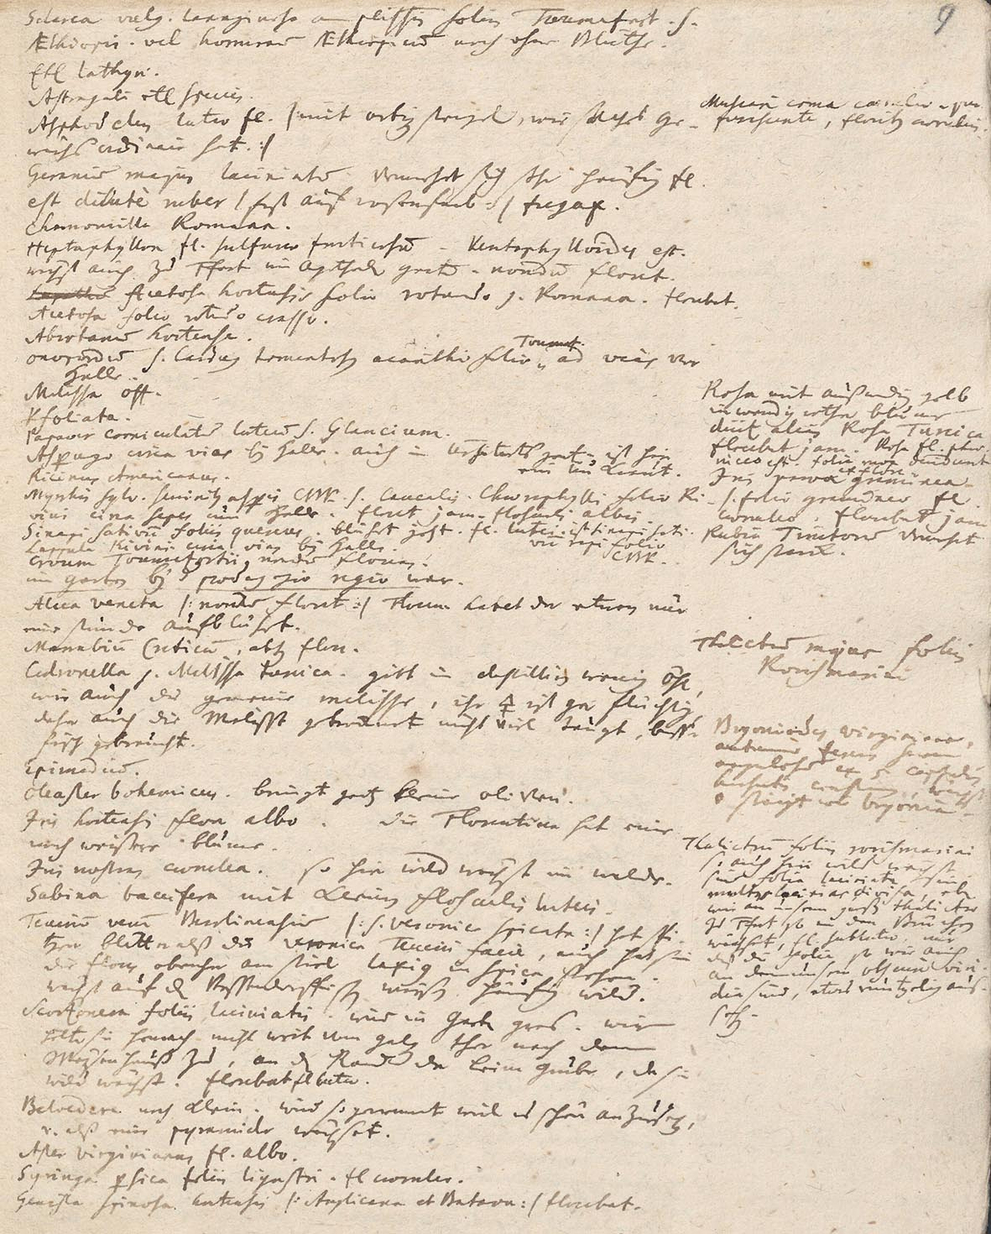 Johann Christian Senckenberg: Tagebuchaufzeichnungen zur Botanik vom 31. Mai 1730. 